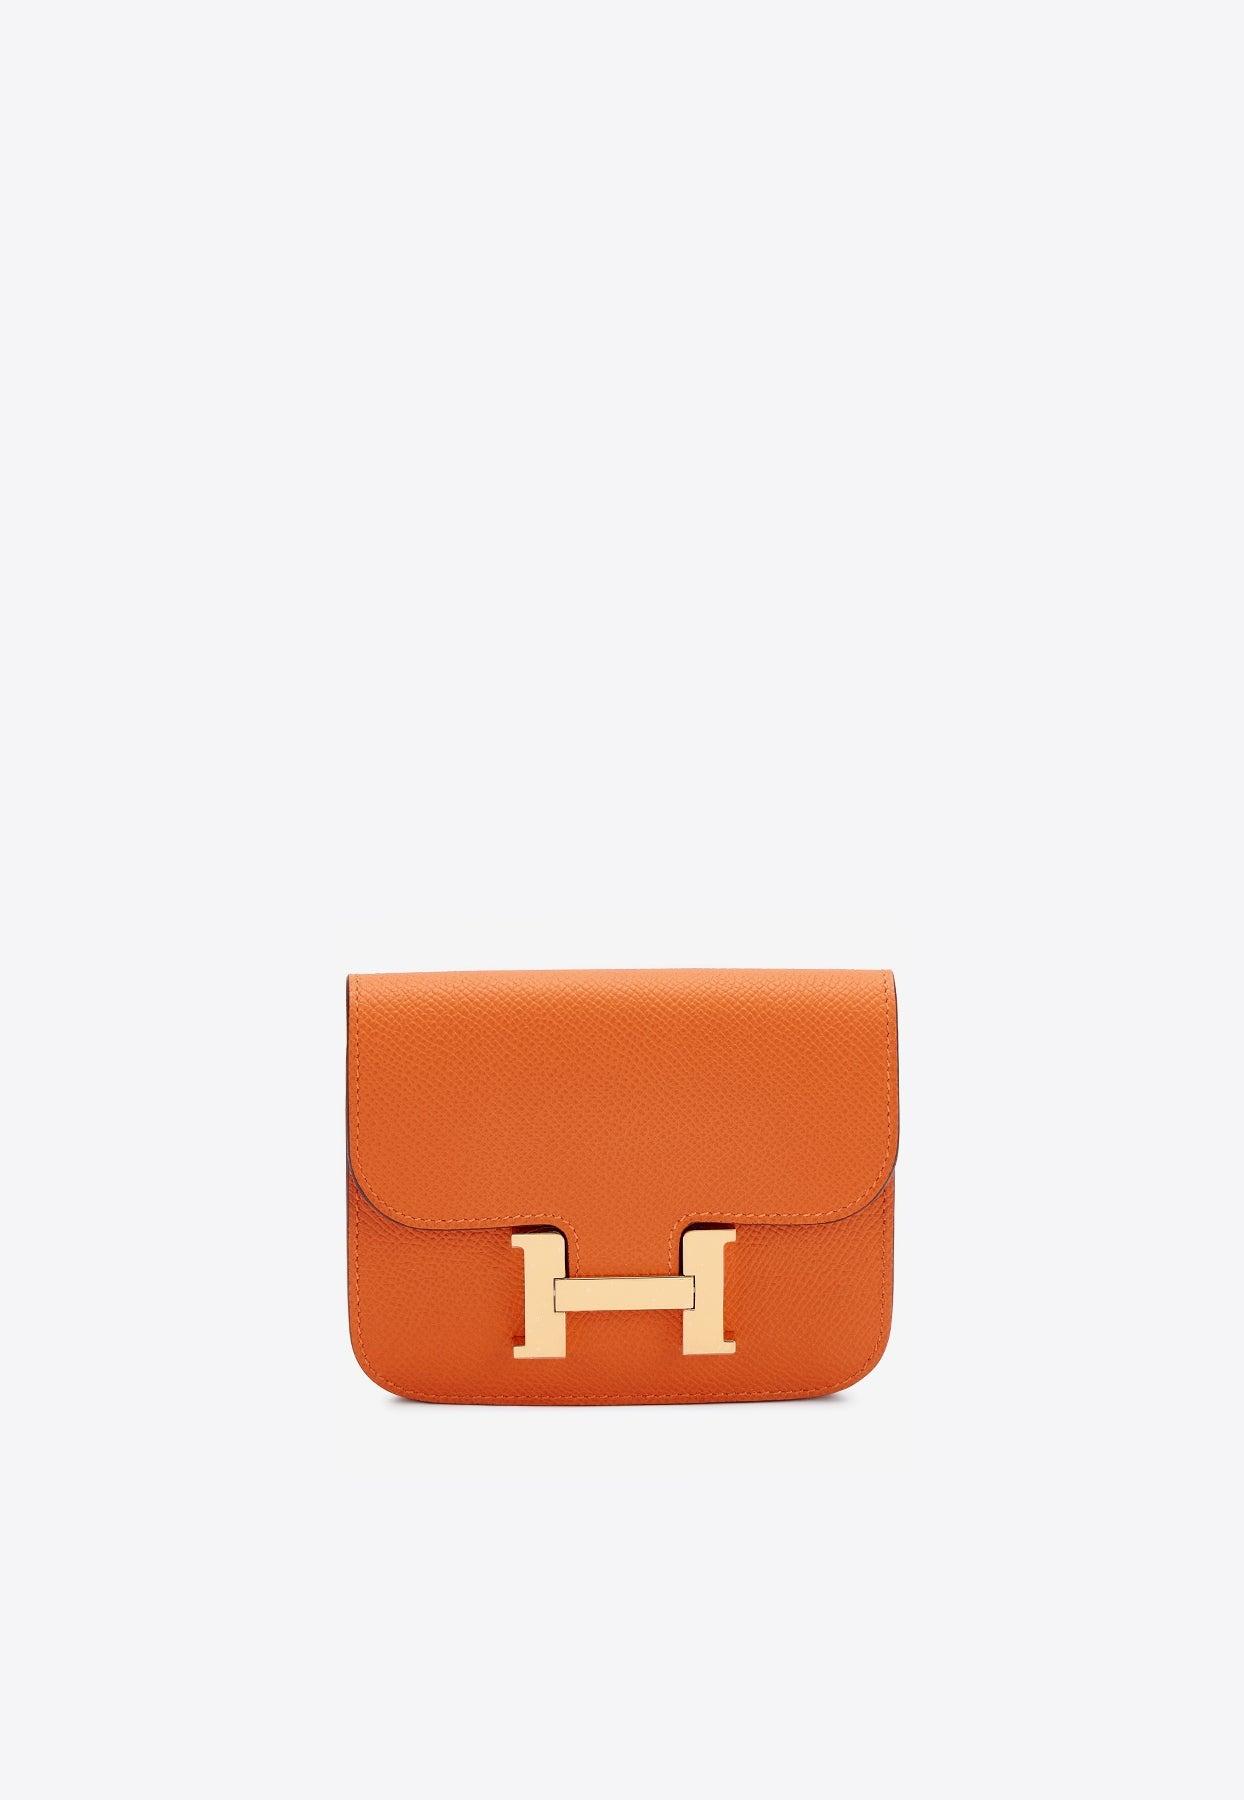 Hermes Orange Leather Bi-Fold Wallet Hermes